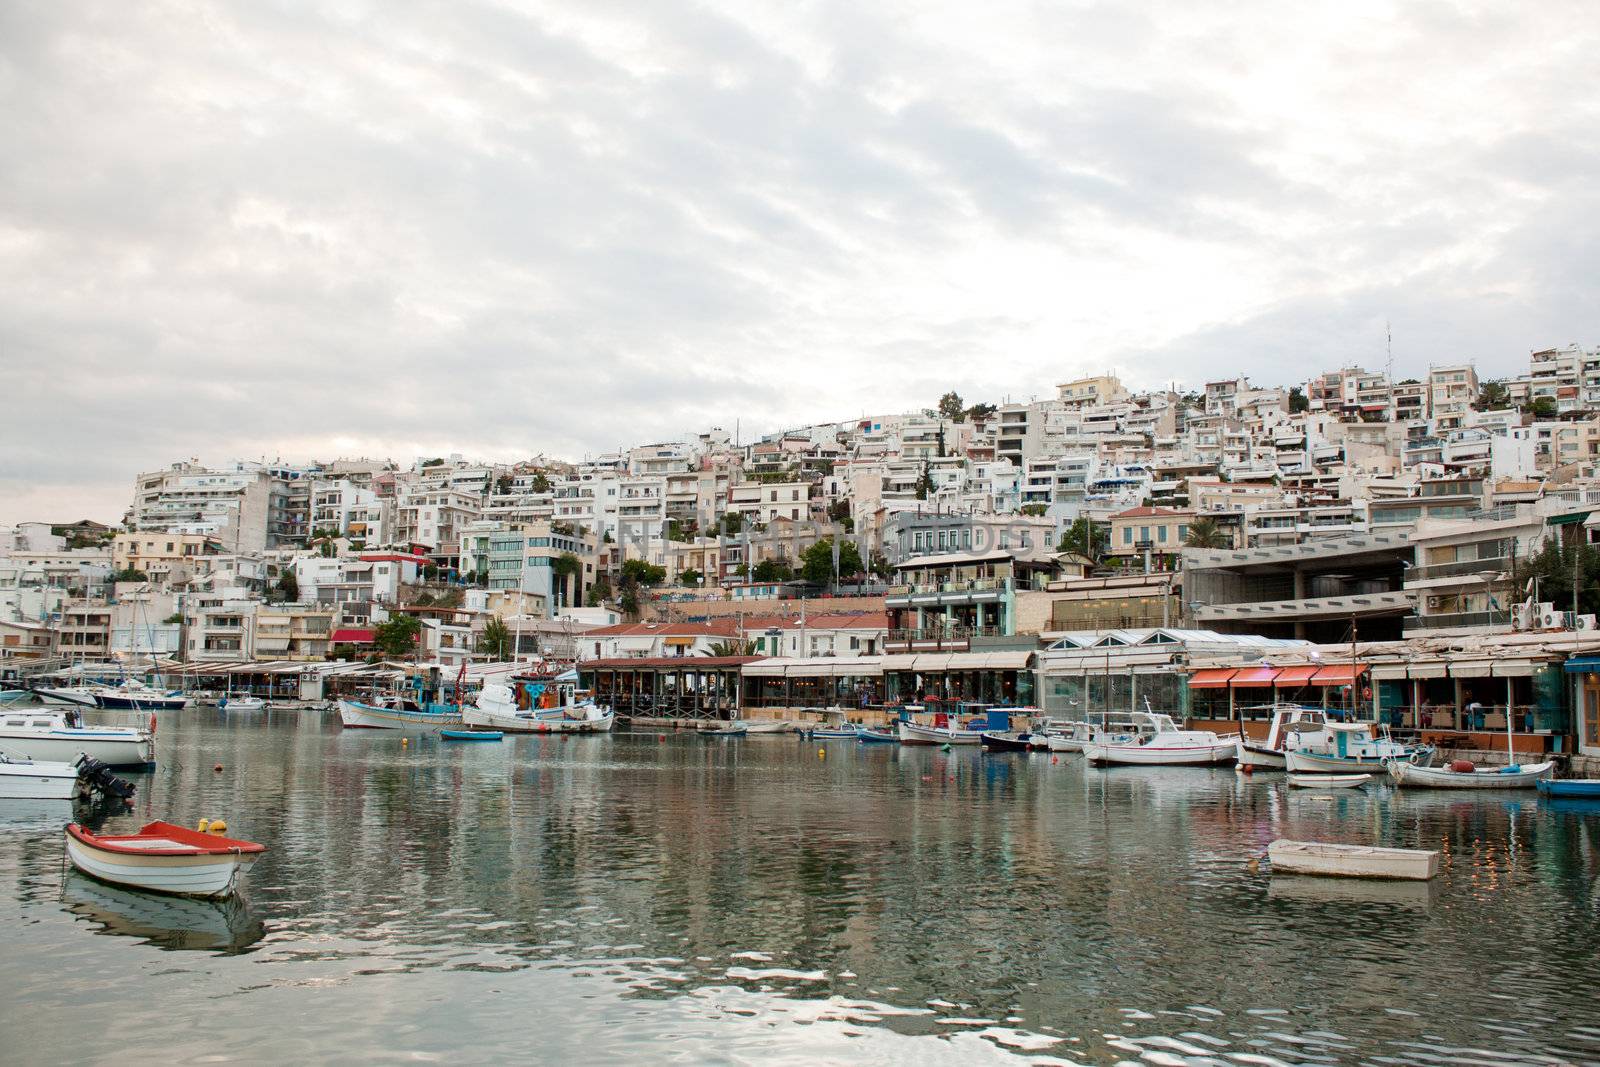 Mikrolimano Port in Piraeus, Athens, Greece by Brigida_Soriano